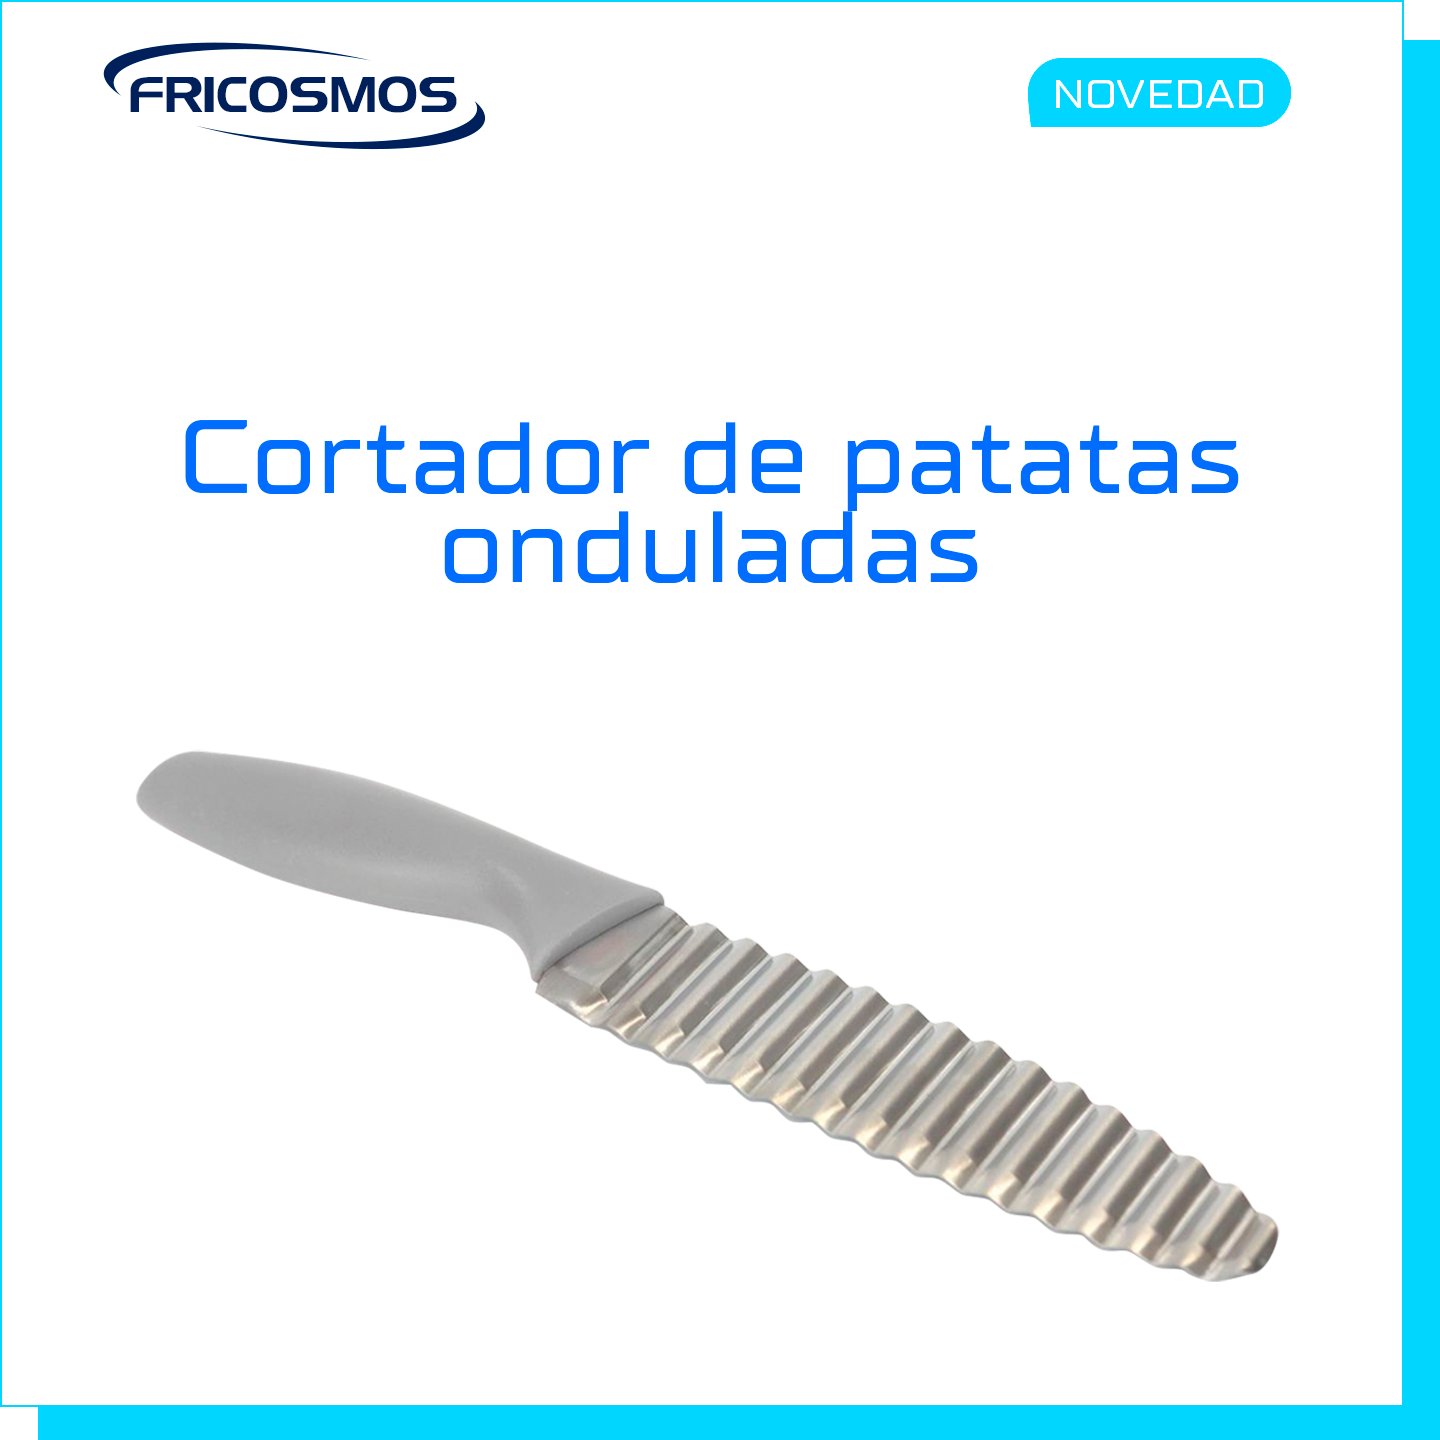 Cuchillo profesional para cortar patatas Fricosmos